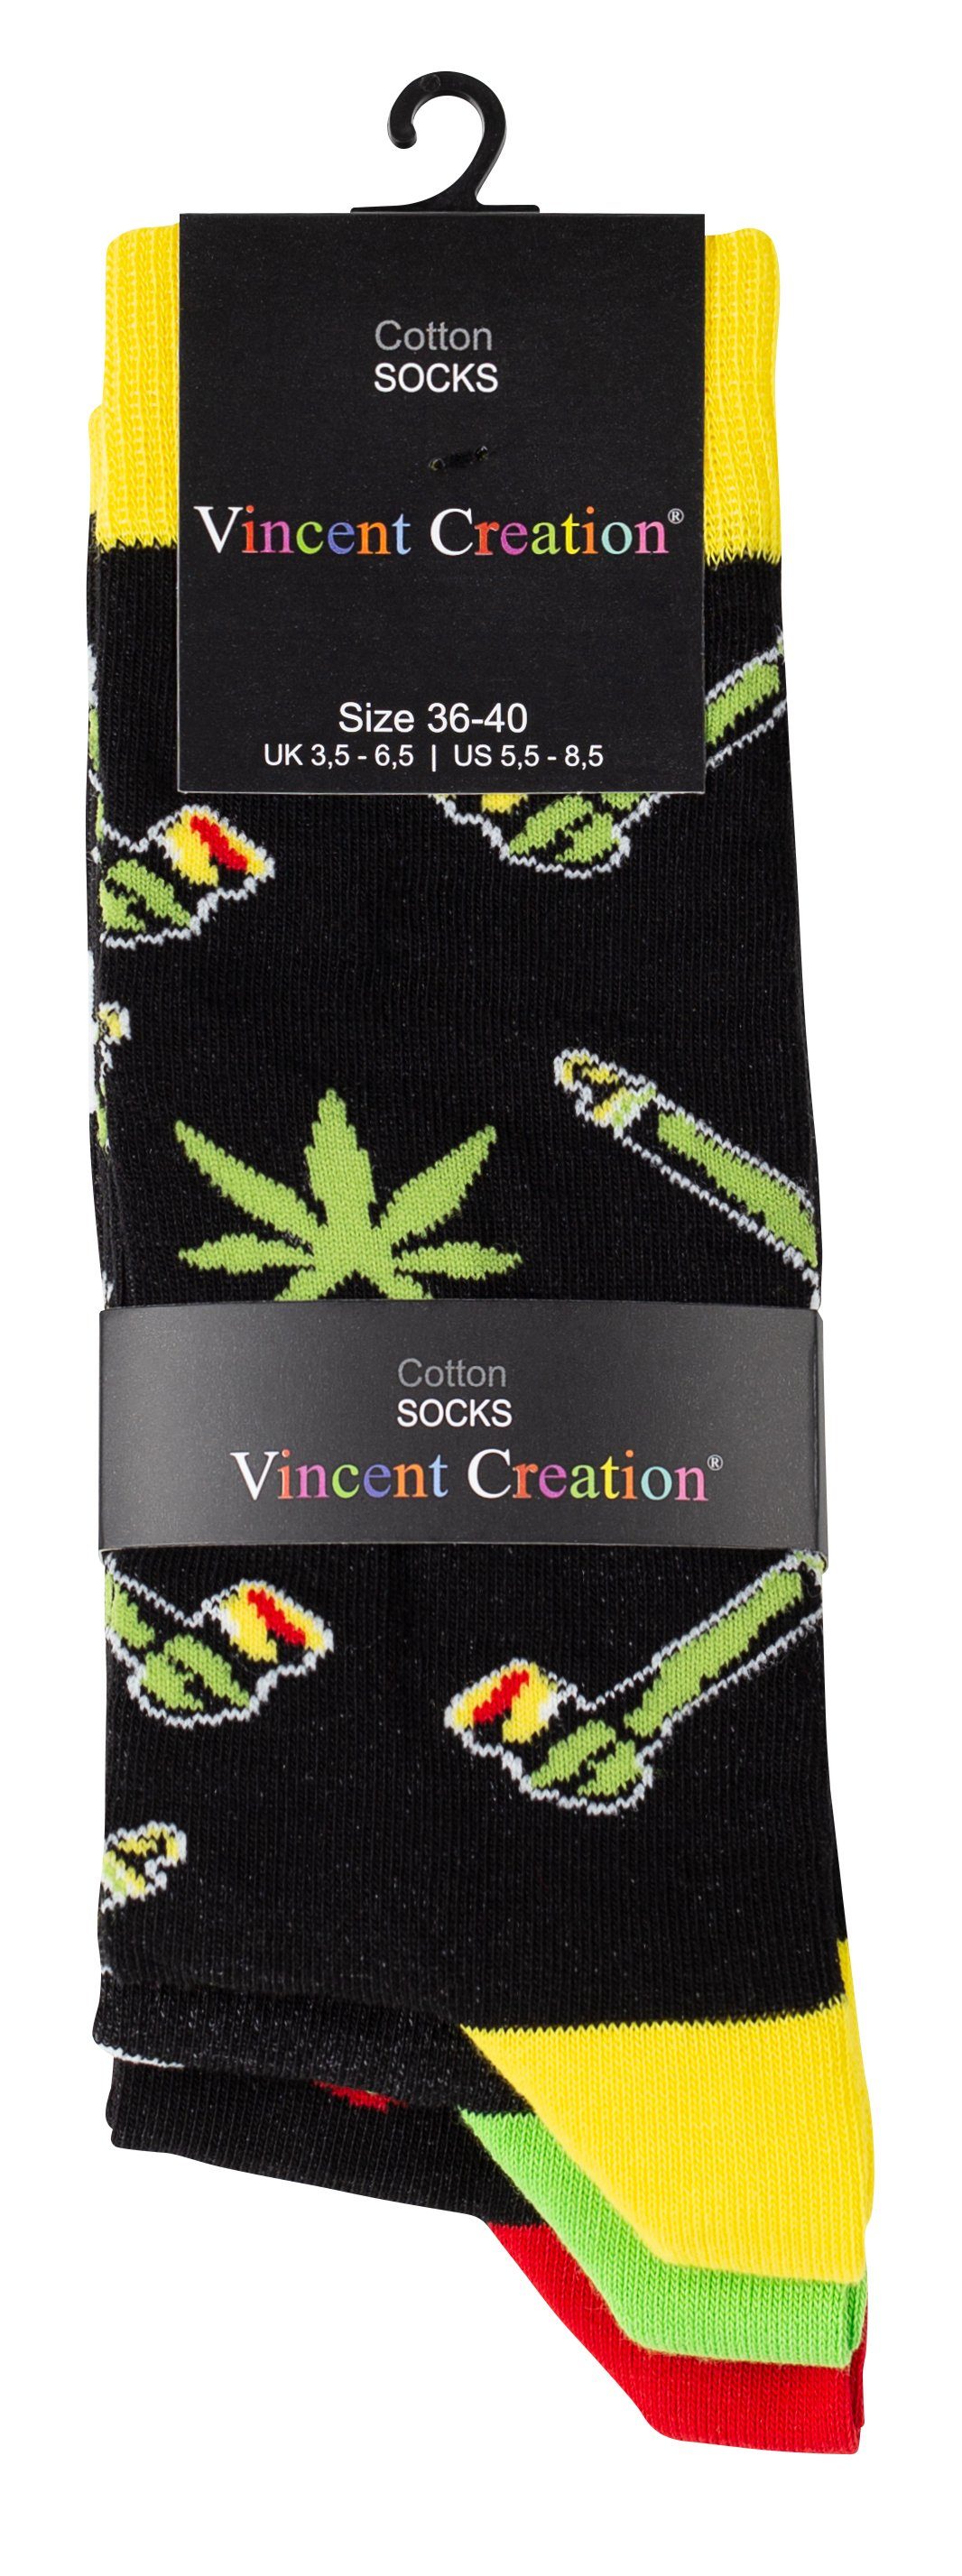 in angenehmer Creation® Vincent Baumwollqualität (3-Paar) Socken